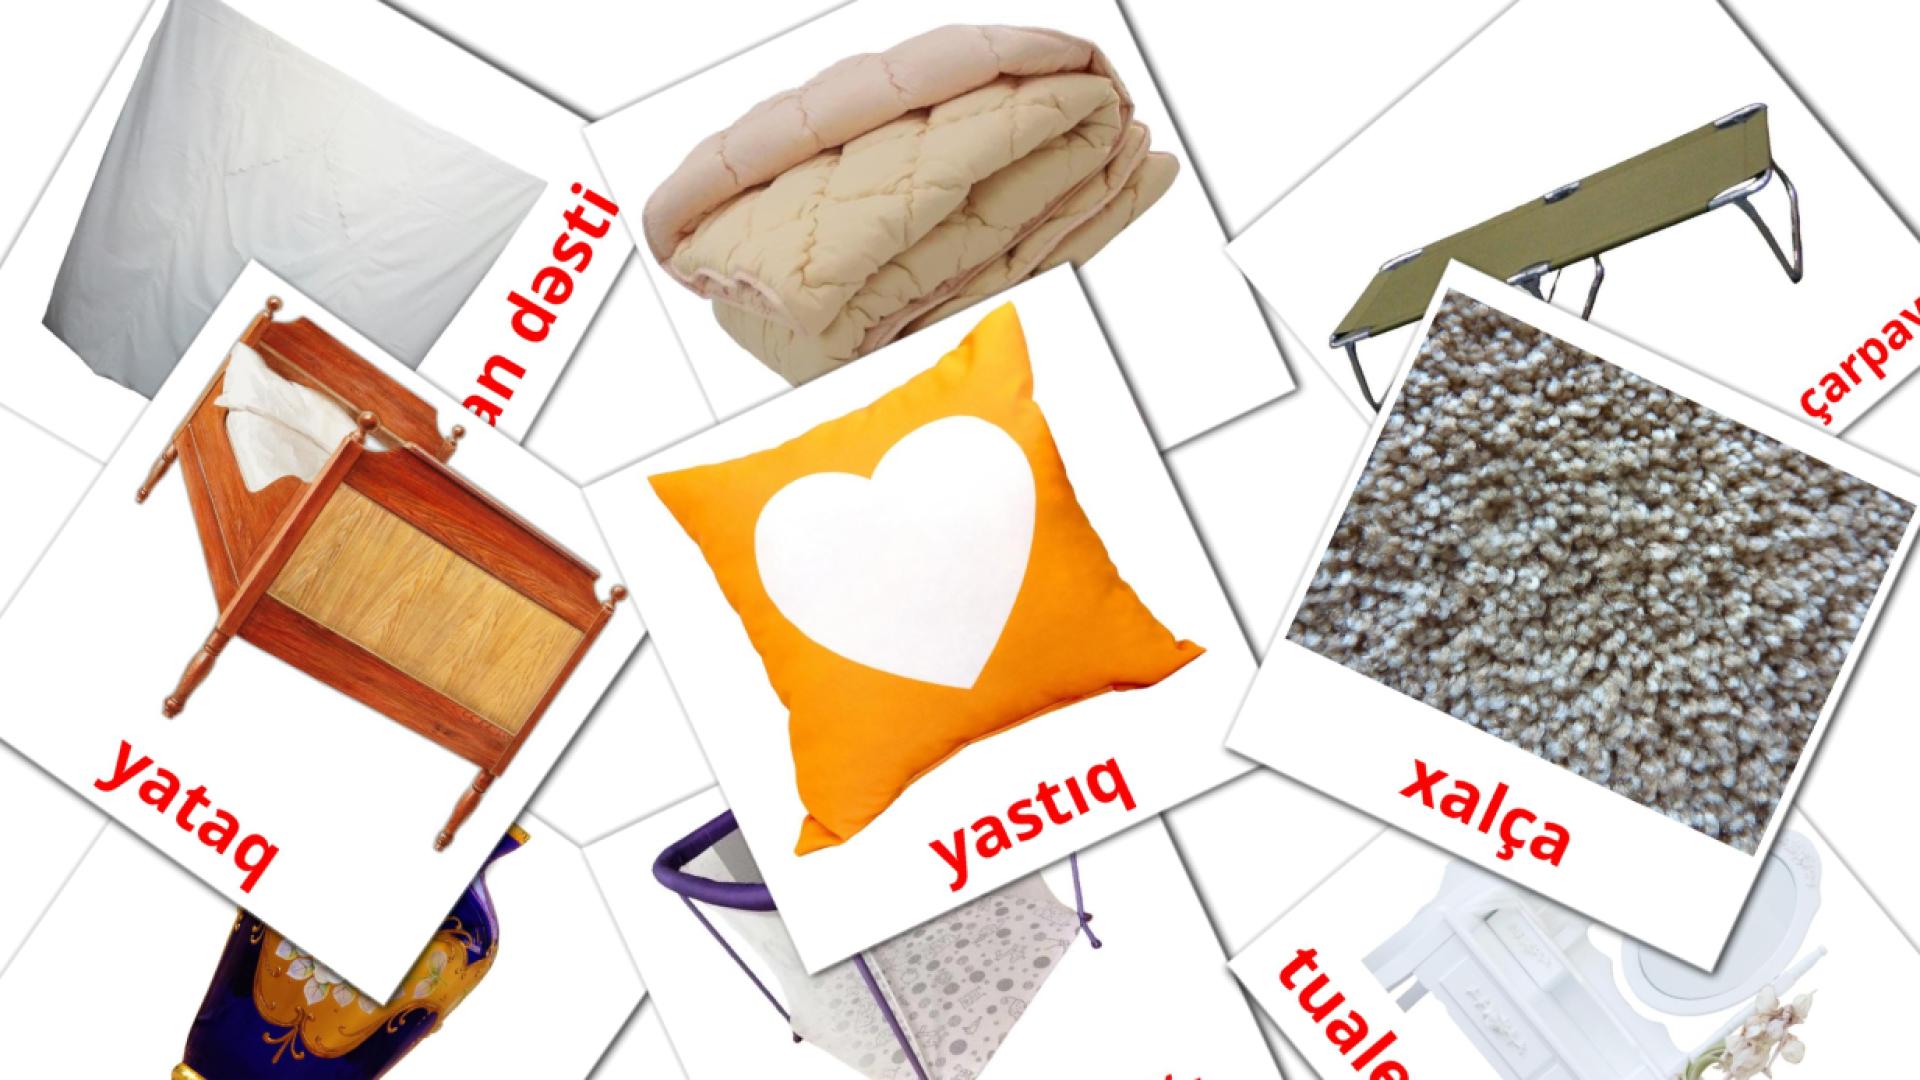 Yataq otağı azerbaijani vocabulary flashcards